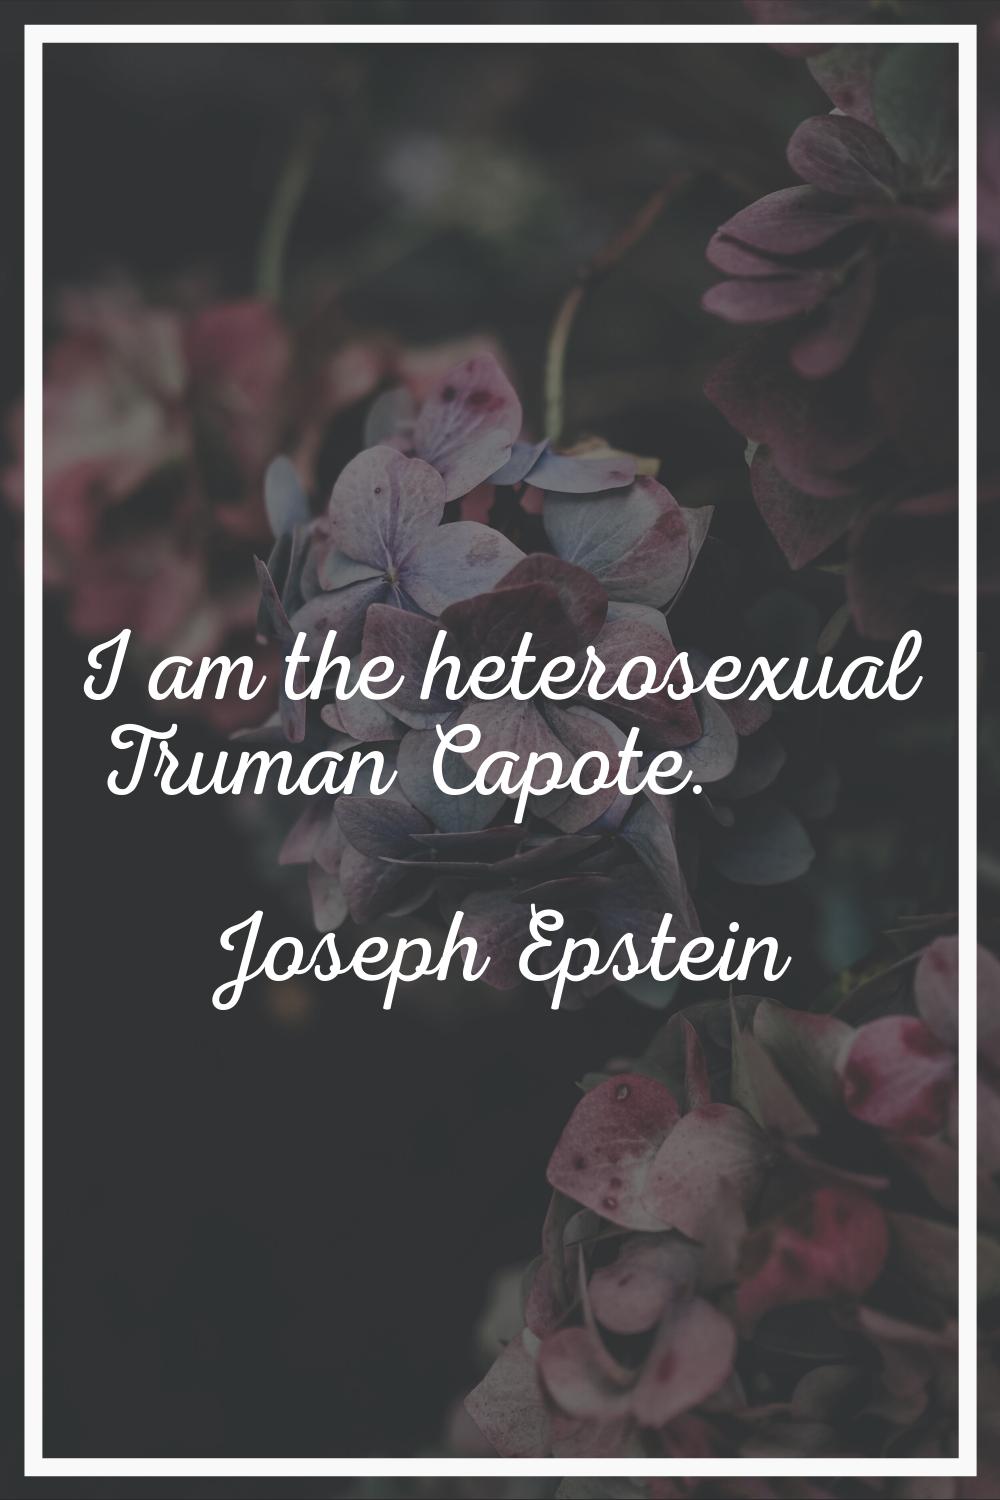 I am the heterosexual Truman Capote.